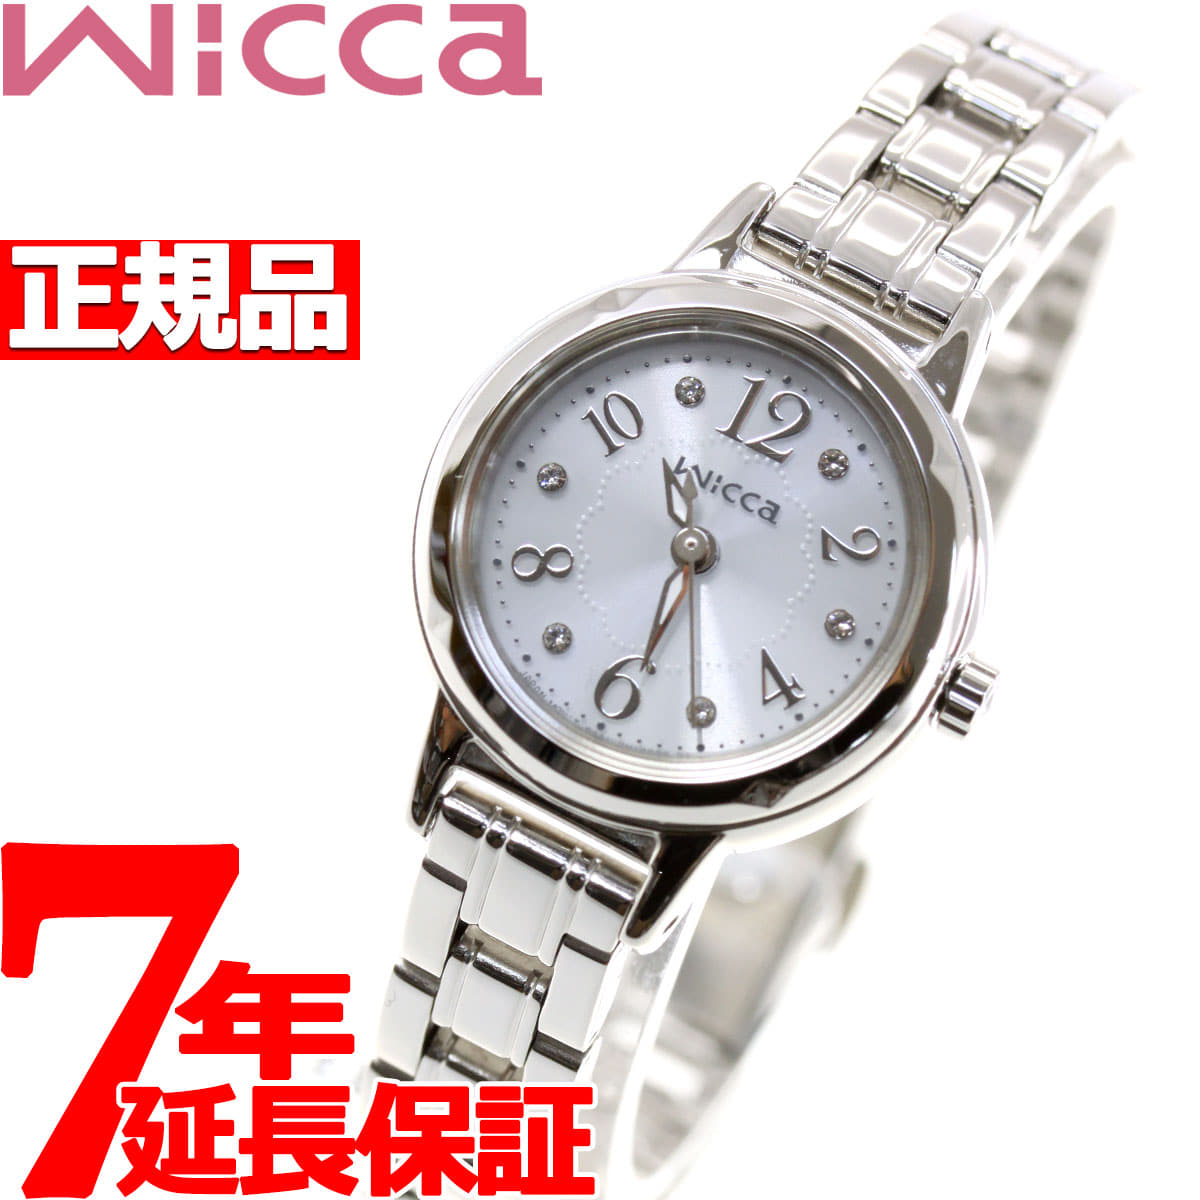 New]shichizunuikka Citizen wicca solar watch Lady's Swarovski model KH9-914-15 - FORWARD